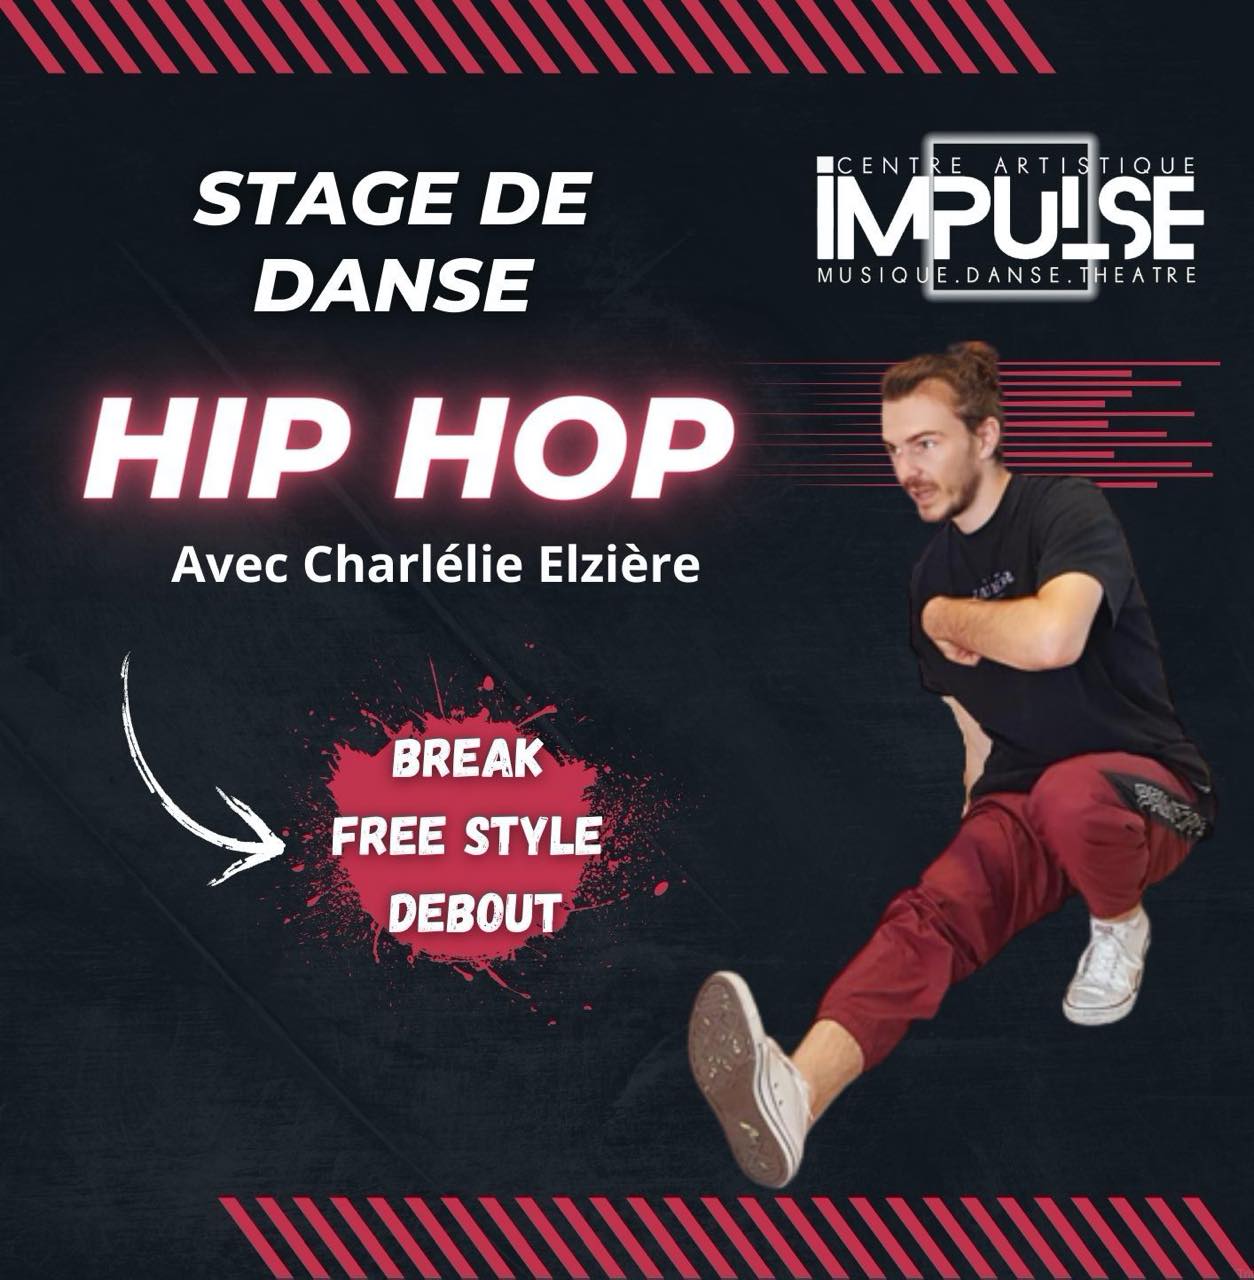 Image Stage de danse Hip Hop Impulse